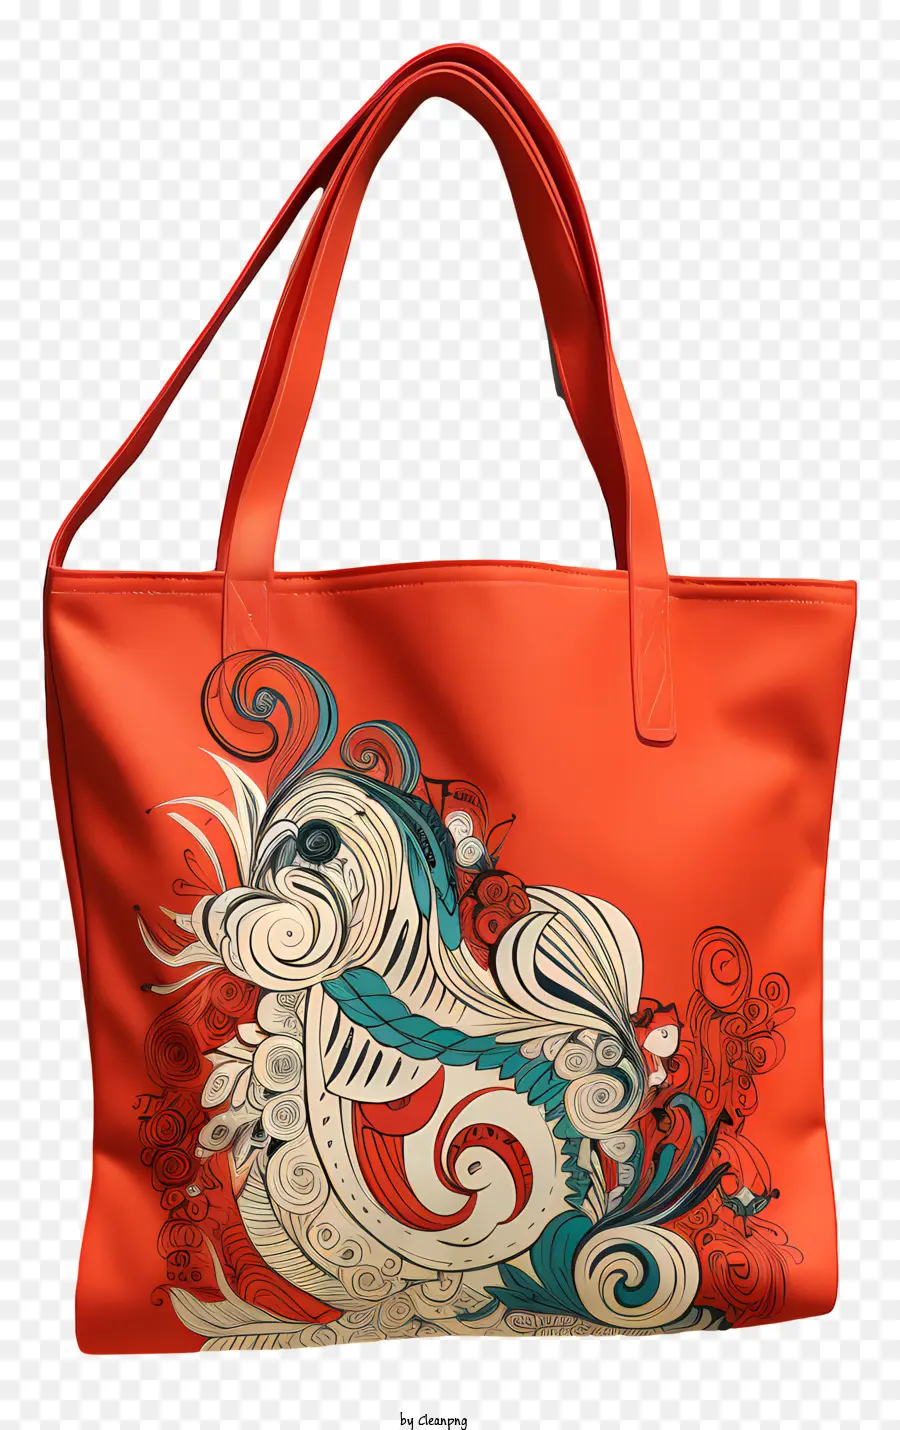 Eco Tog túi da màu cam Túi Tote Thiết kế thiên nga Thiết kế màu xanh và màu đỏ mẫu - Túi tote da màu cam với hình ảnh thiên nga